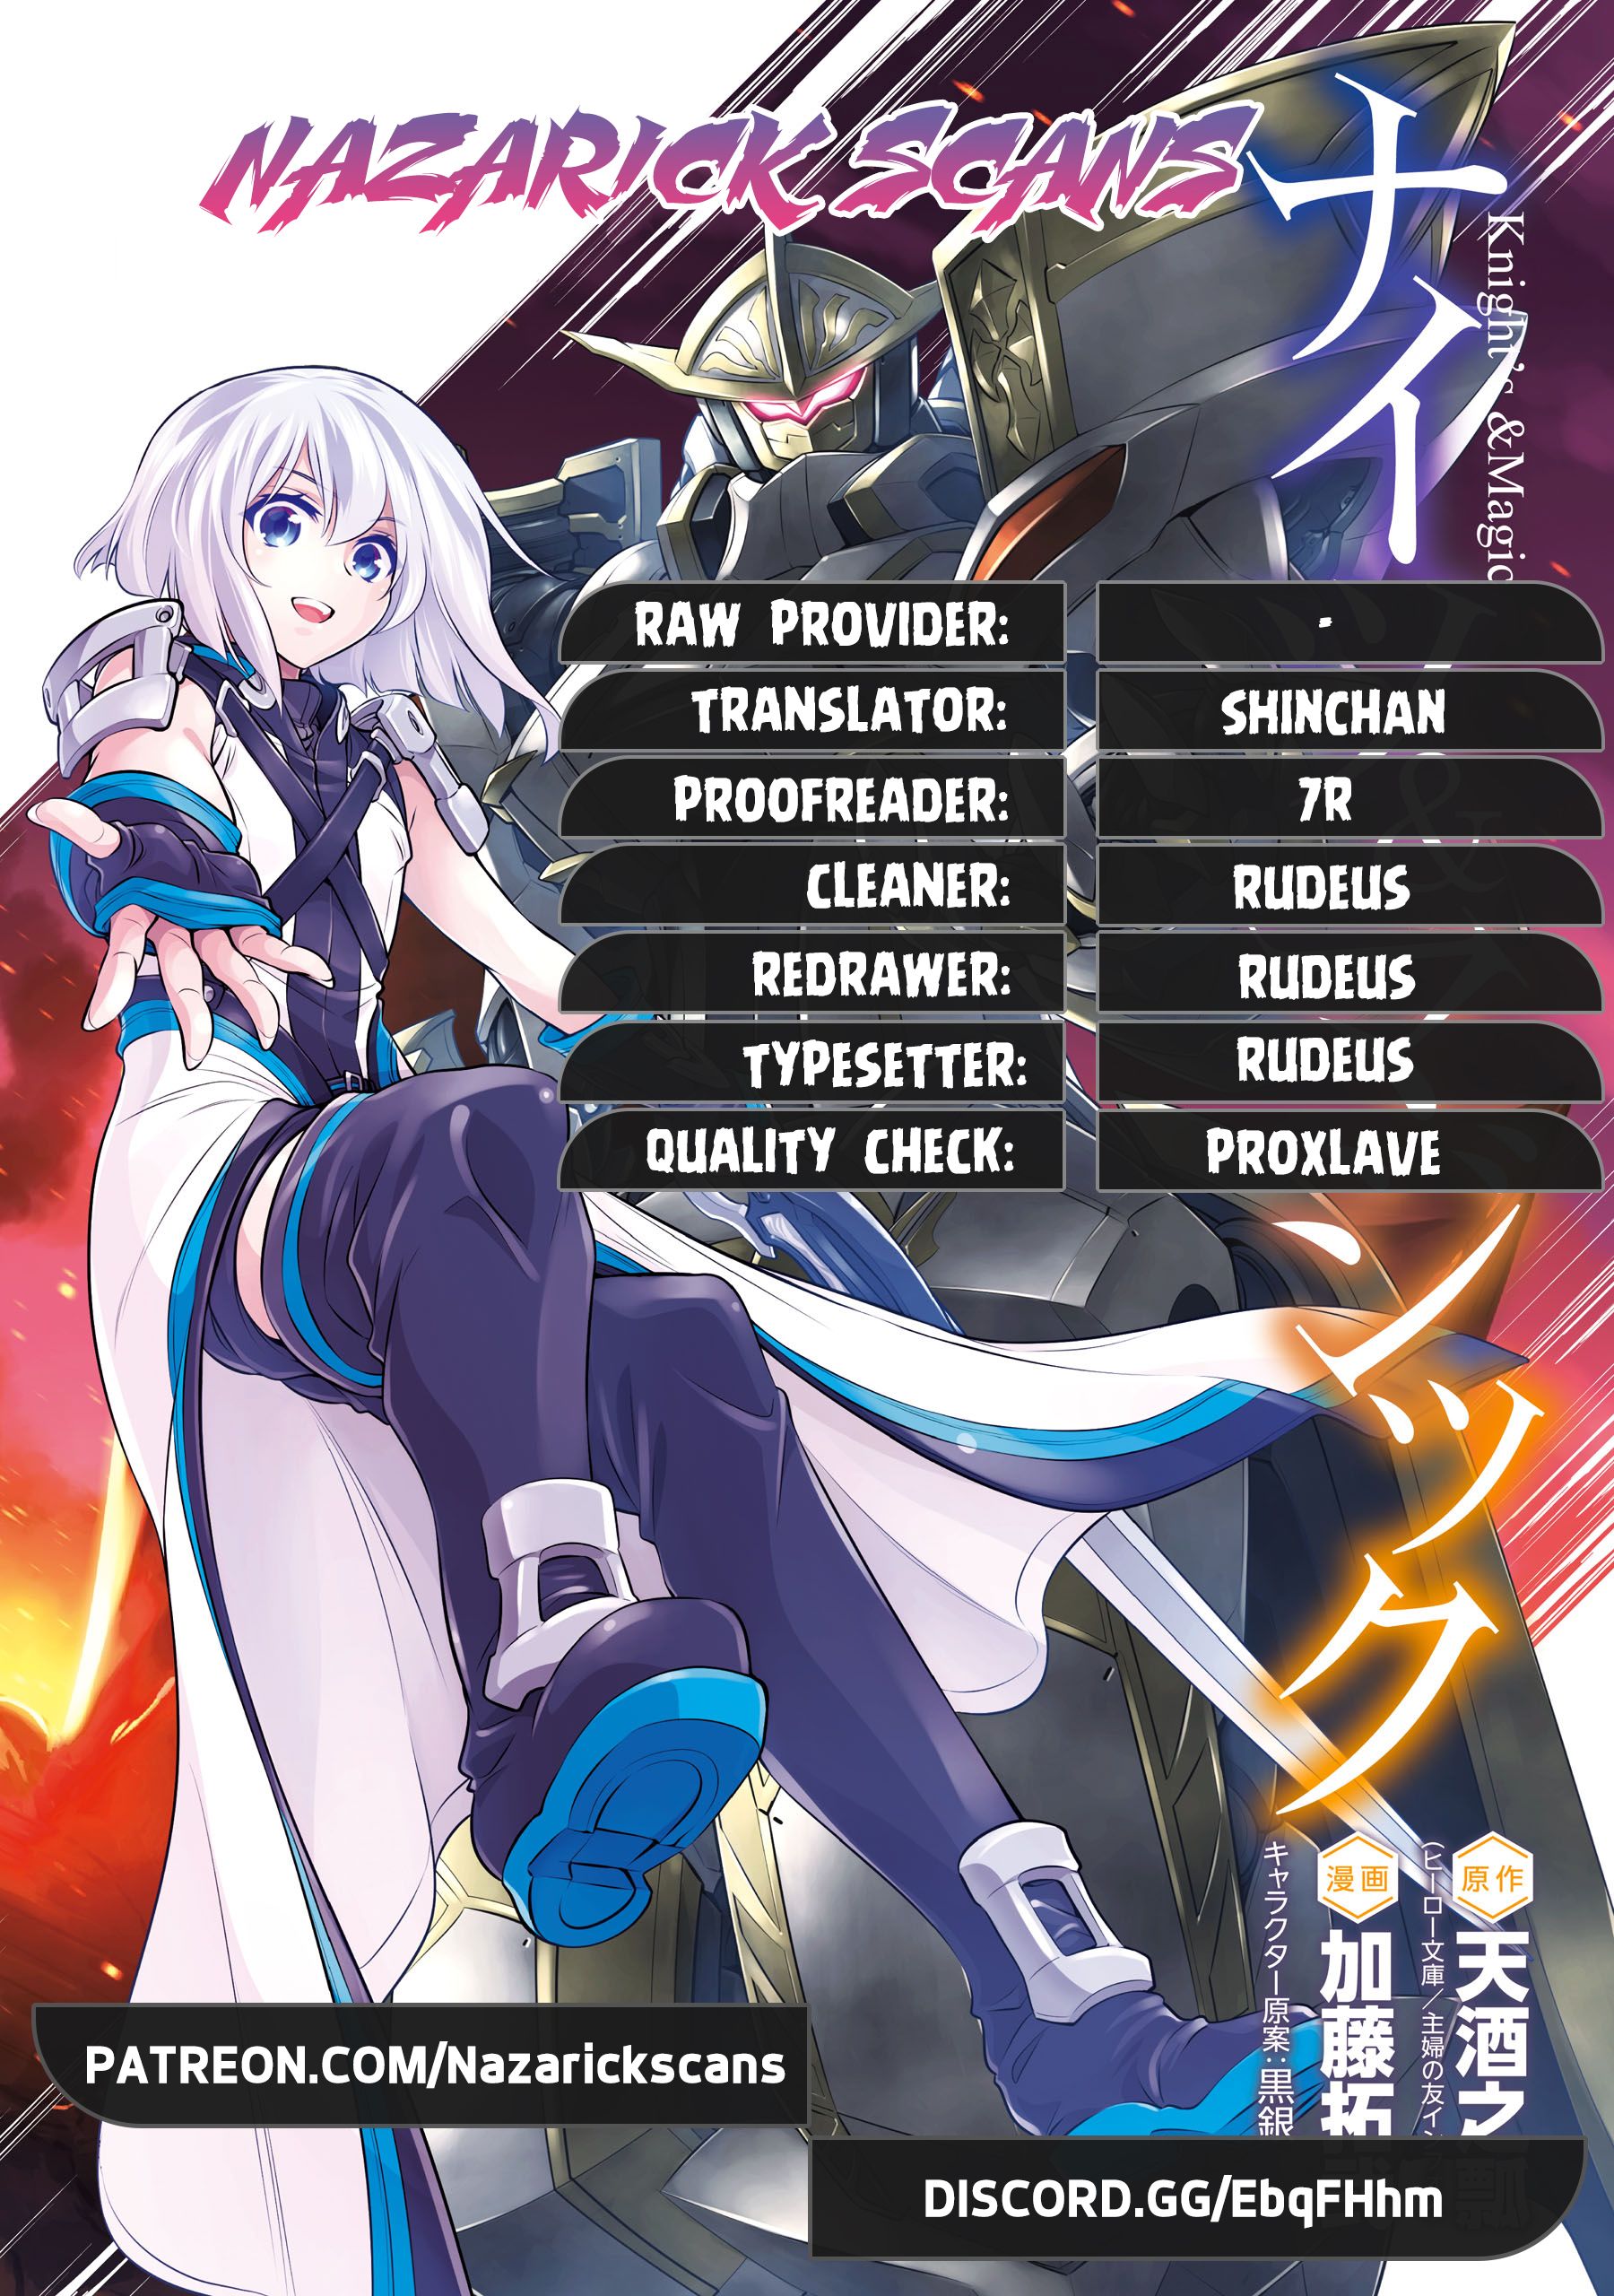 Read Knights & Magic Manga English [New Chapters] Online Free - MangaClash